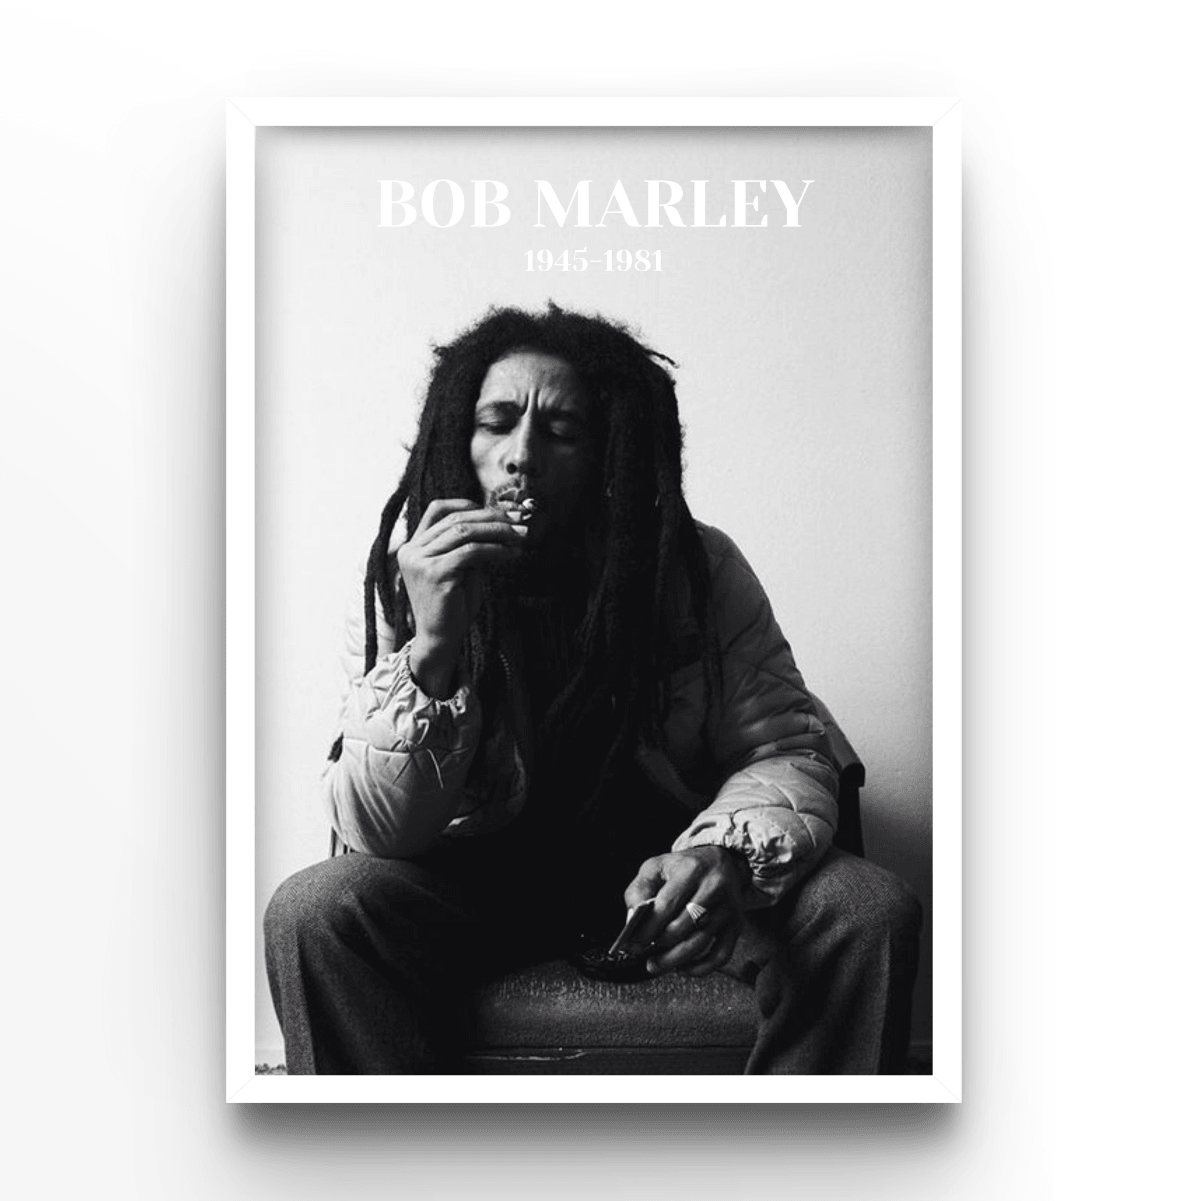 Bob Marley - A4, A3, A2 Posters Base - Poster Print Shop / Art Prints / PostersBase